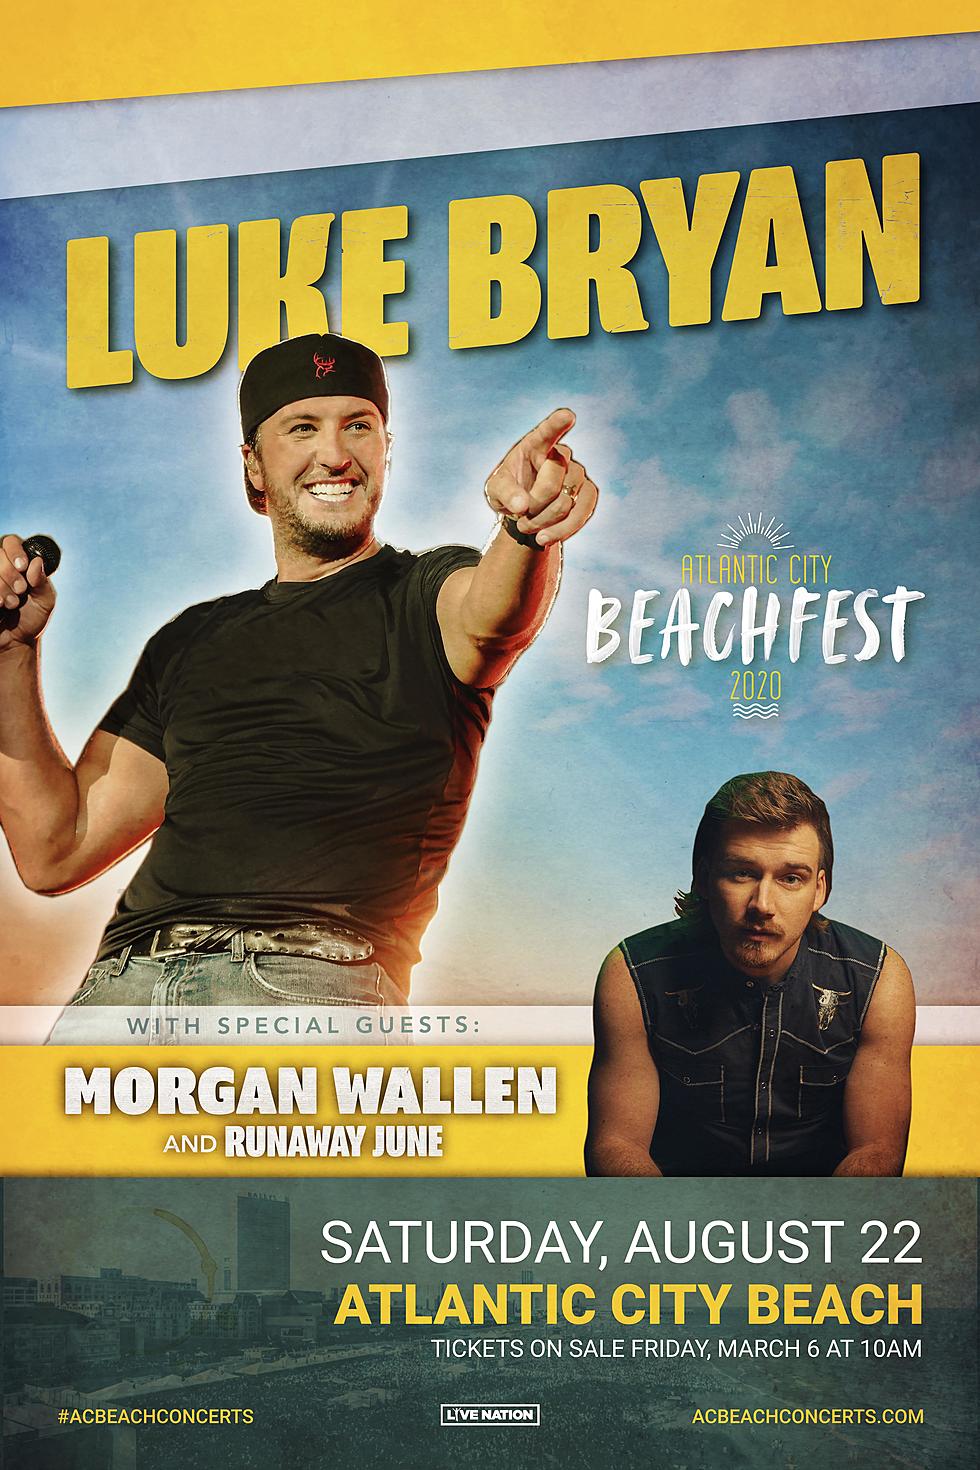 Atlantic City Beachfest: Luke Bryan with Morgan Wallen